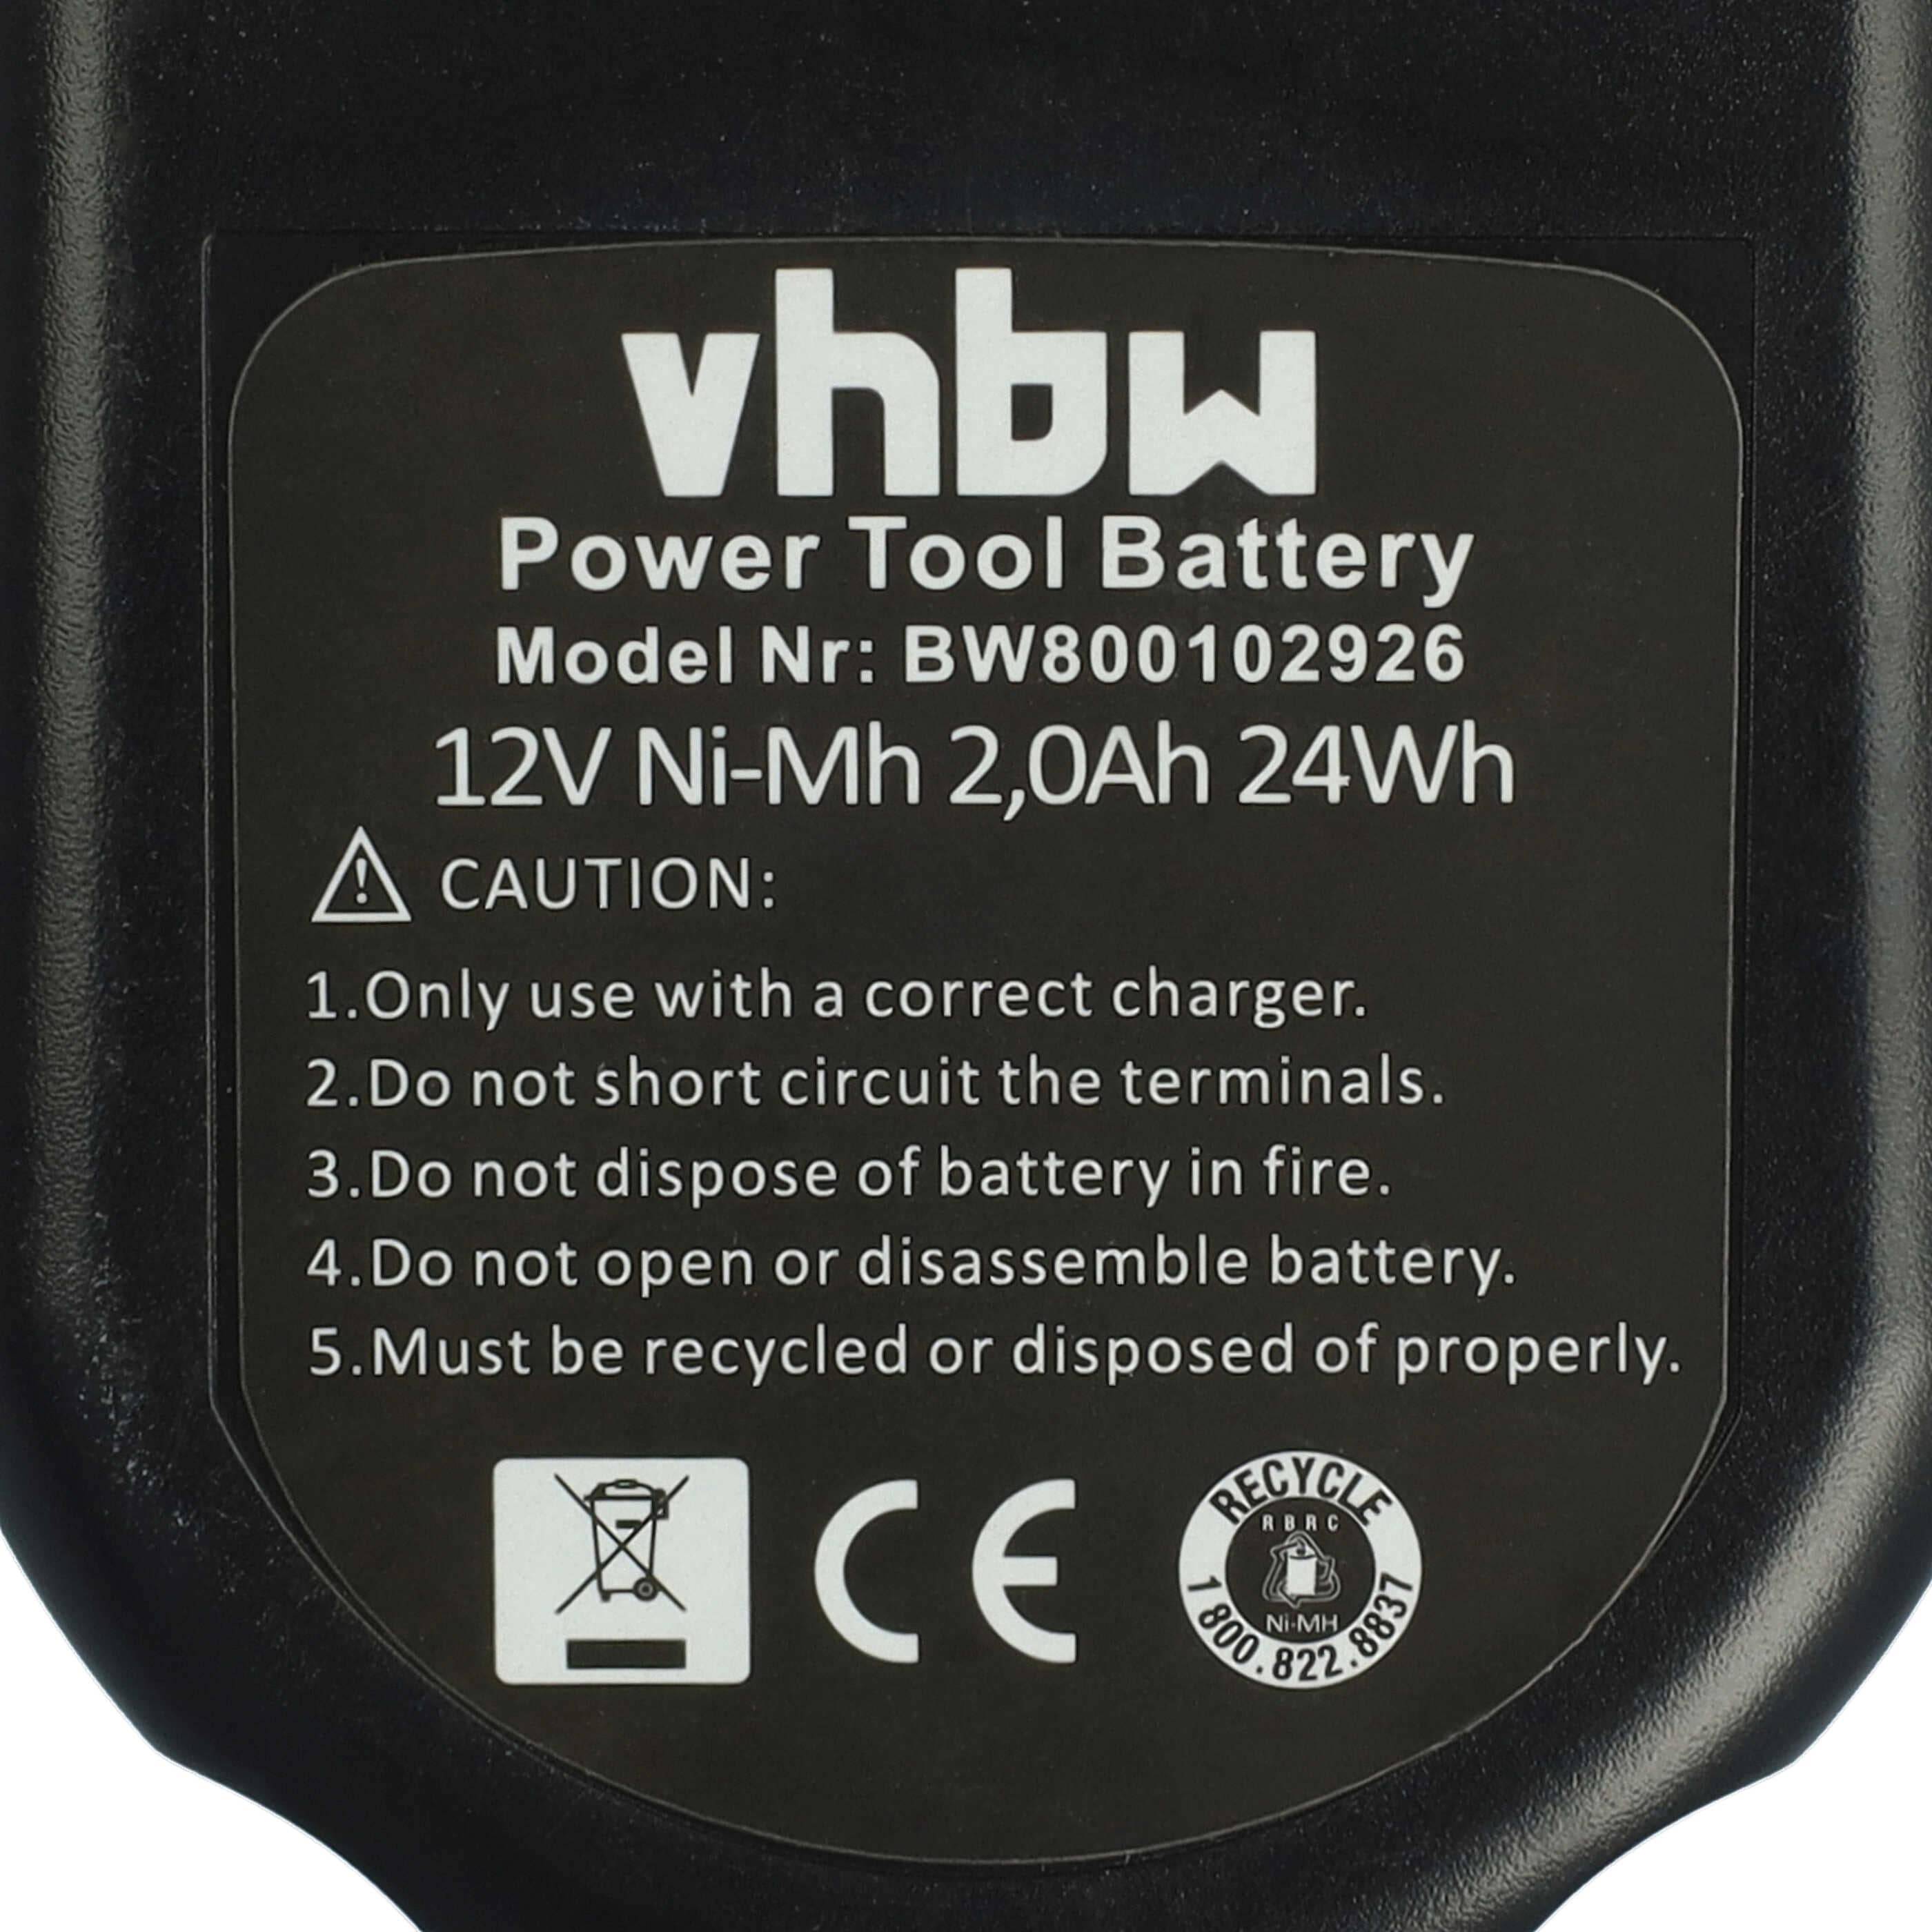 Batterie remplace Black & Decker A9274, A9252, A927, A9266, A9275 pour outil électrique - 2000 mAh, 12 V, NiMH